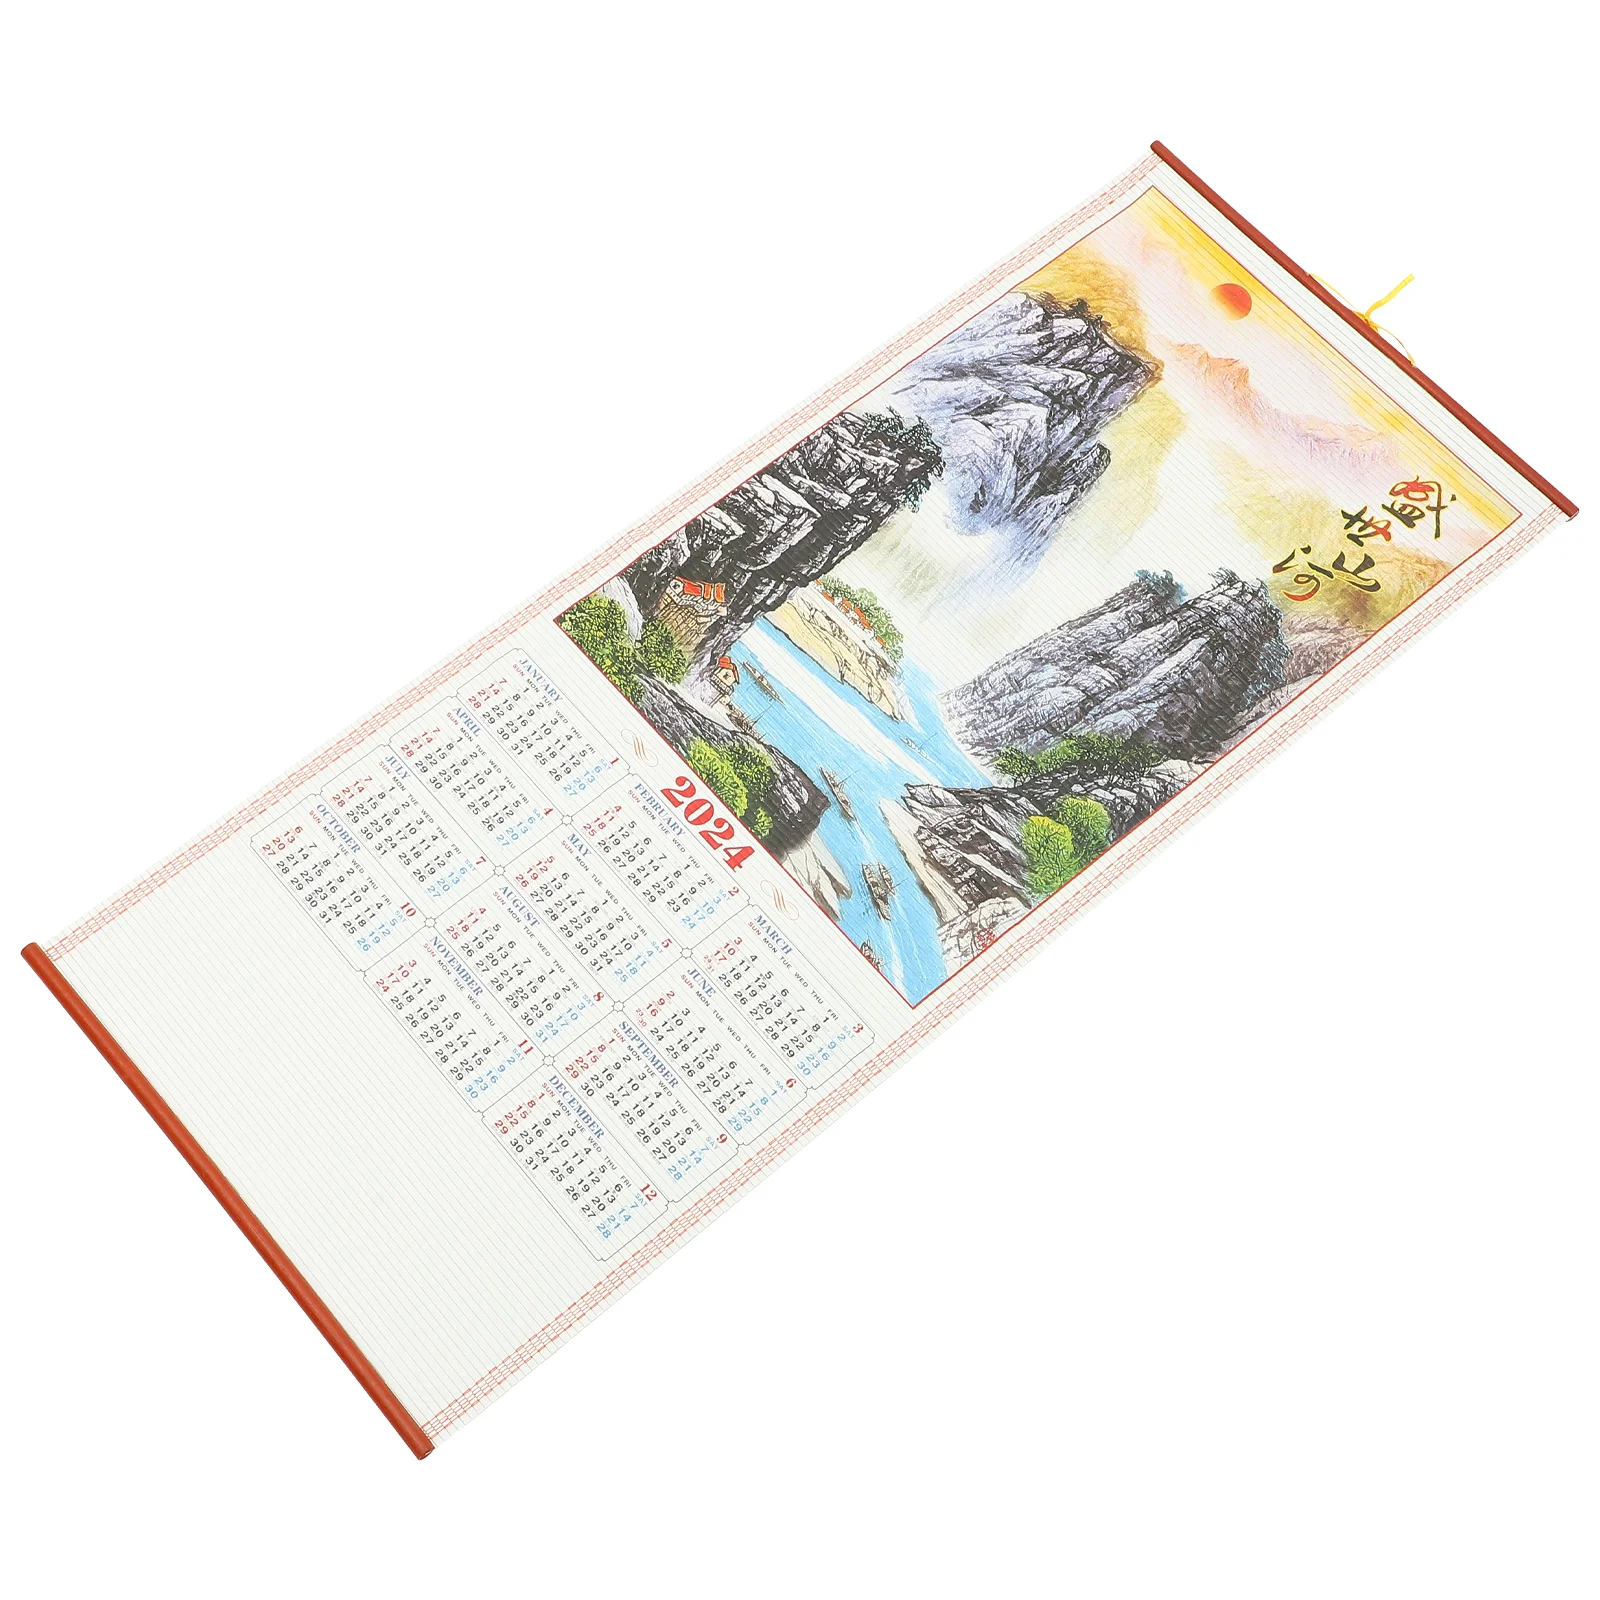 

Календарь ежемесячный настенный подвесной календарь в китайском стиле подвесной календарь Год Дракона